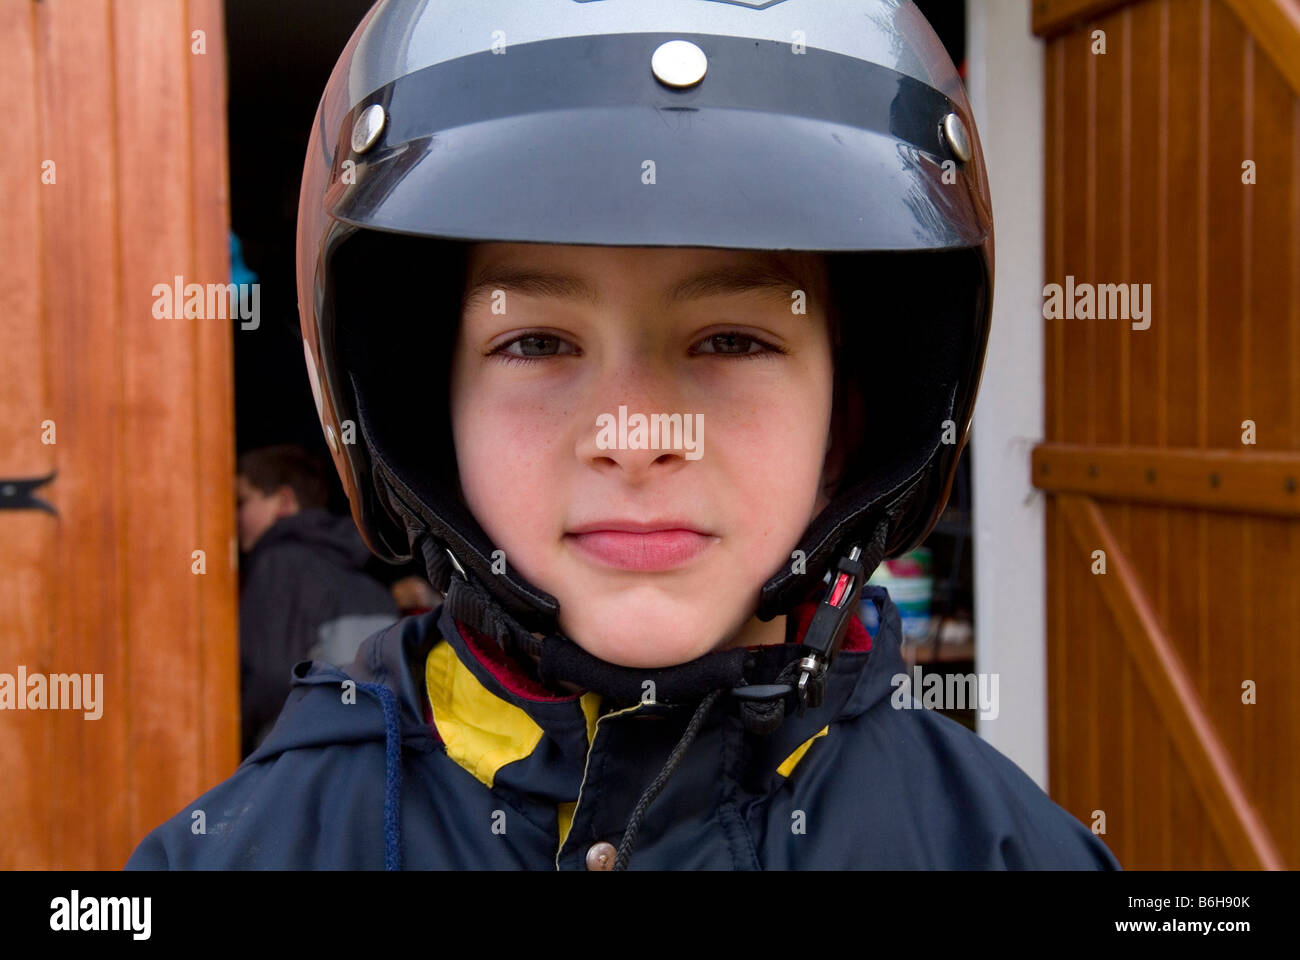 Young boy wearing motorcycle helmet Stock Photo - Alamy